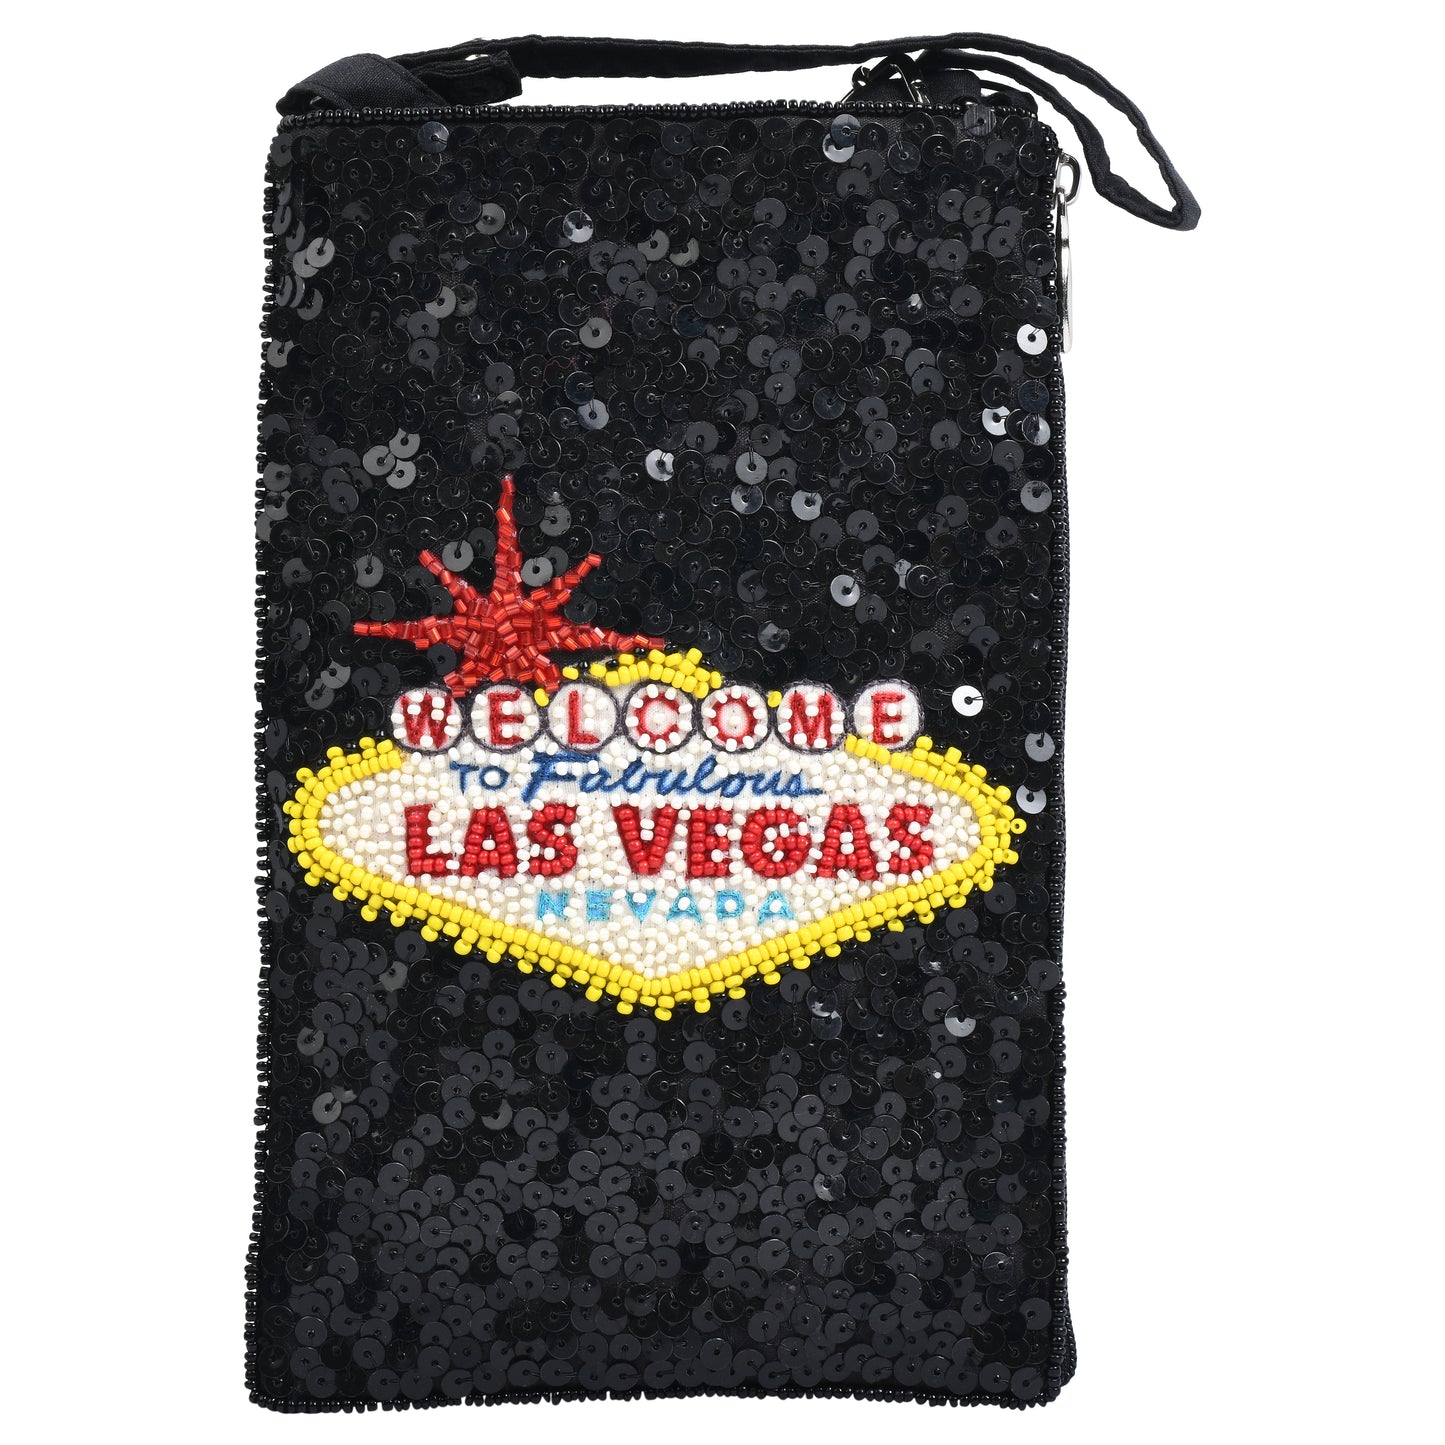 Las Vegas Club Bag